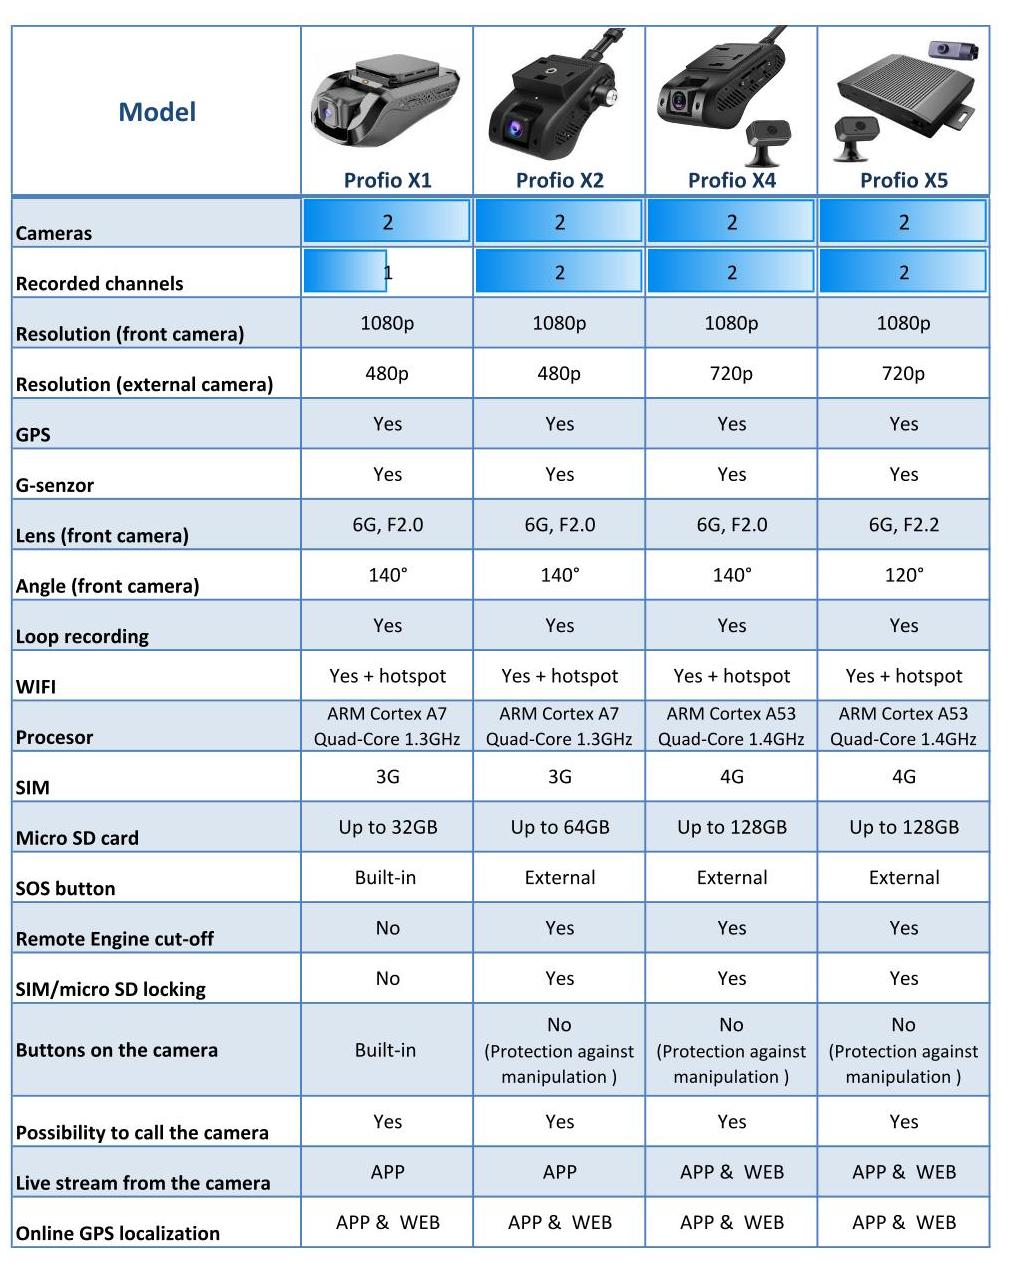 профессиональные автомобильные камеры profio - сравнение